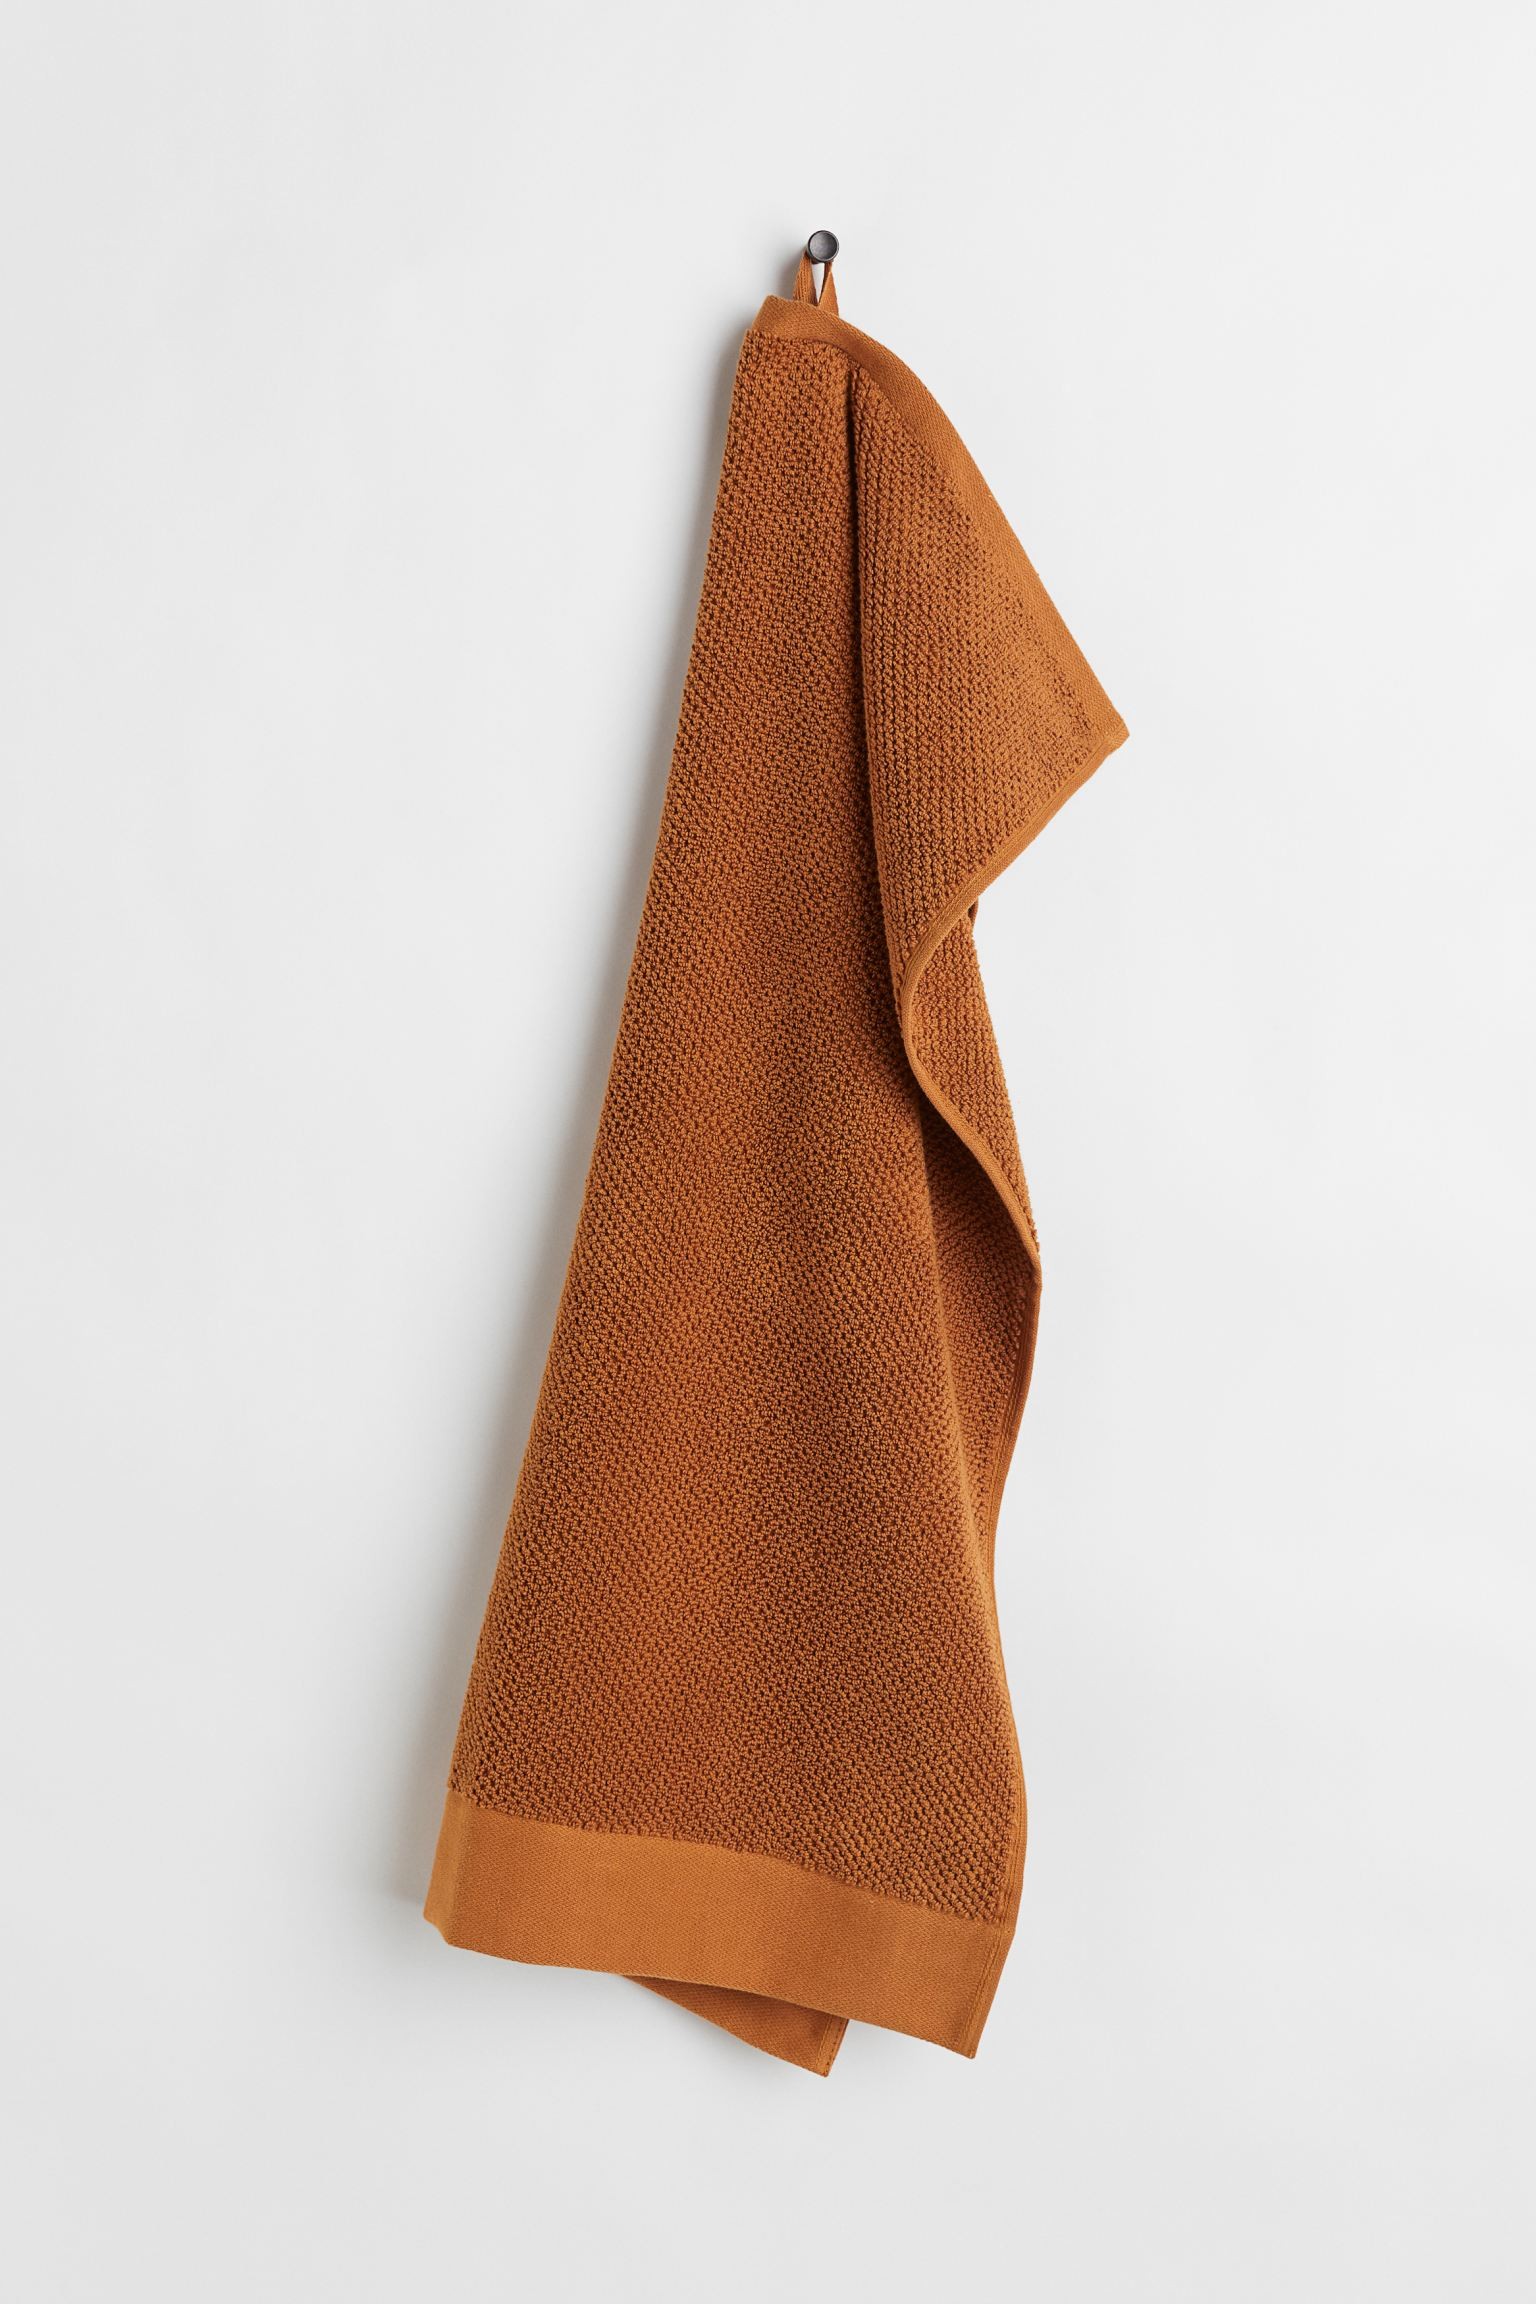 H&M Home Махровий рушник, Коньяк коричневий, 50x70 1097305006 | 1097305006